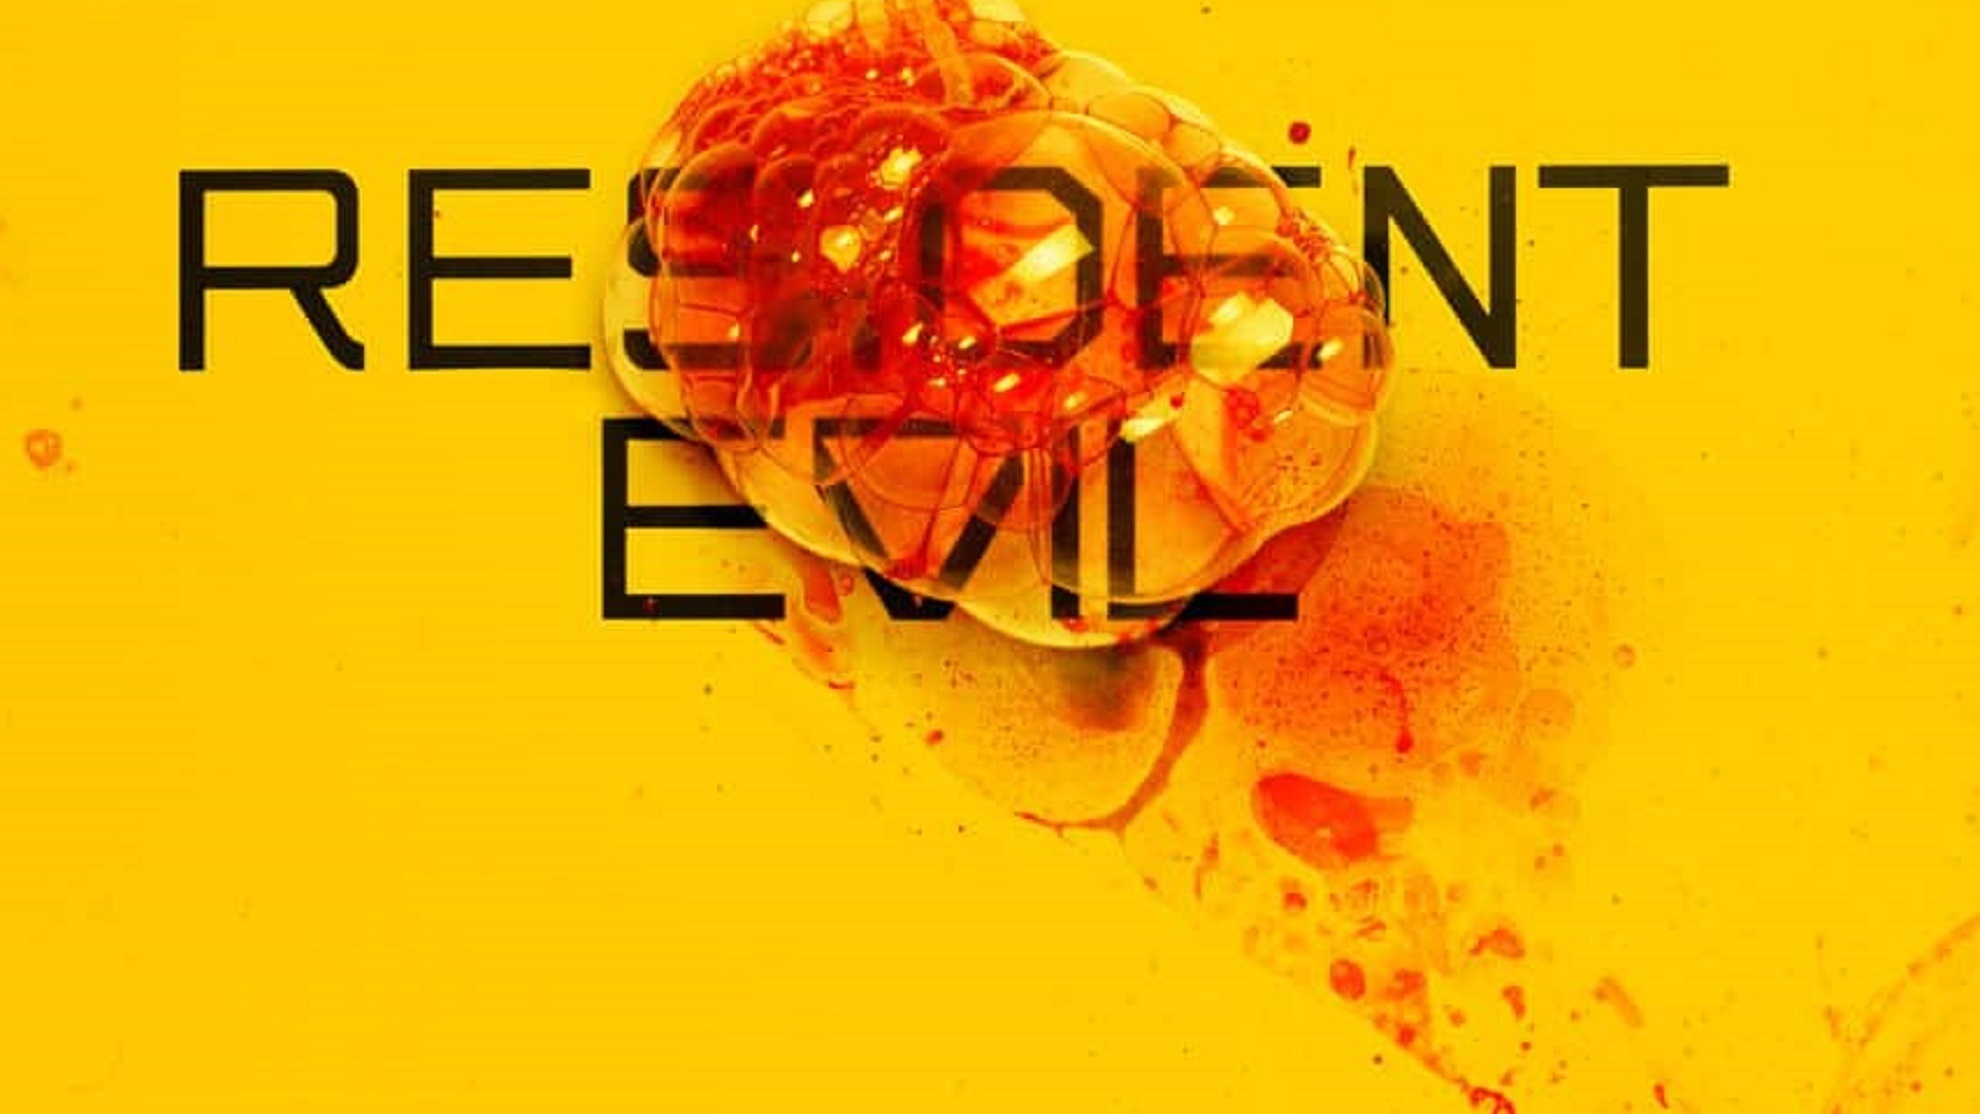 Resident Evil, suspenso absoluto en su estreno por parte de la audiencia y de la crtica especializada